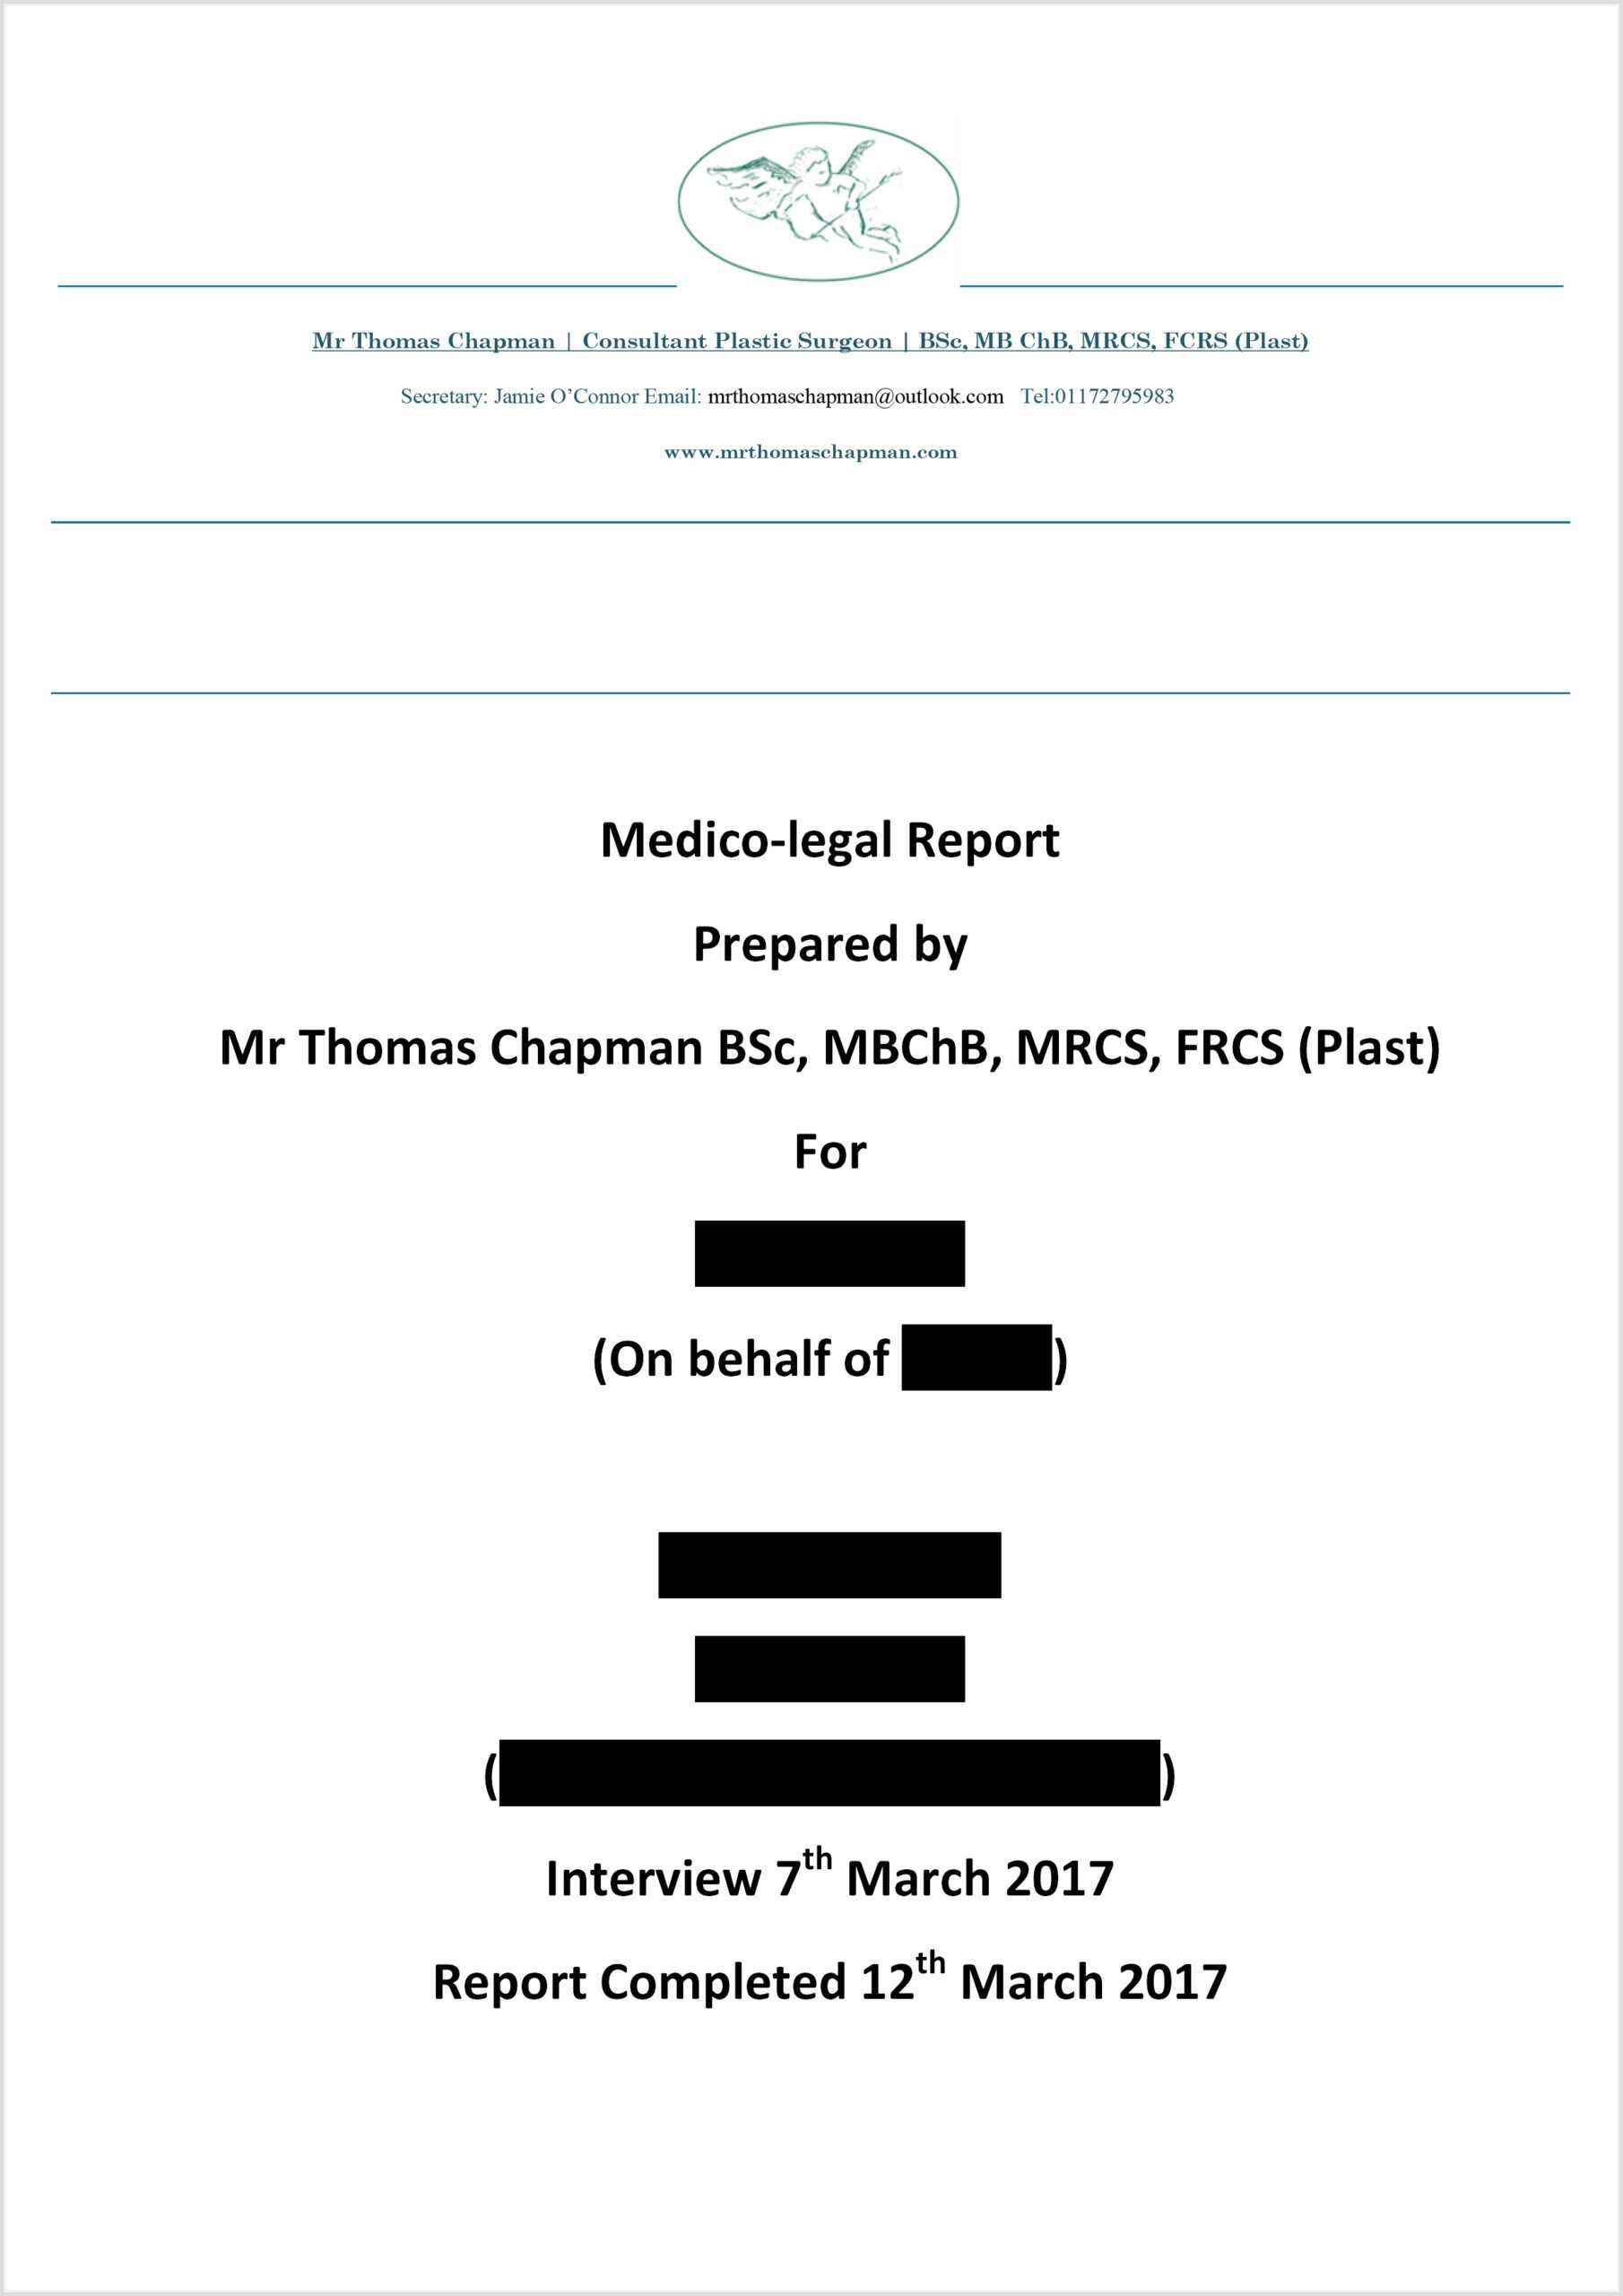 Medicolegal Reporting - Mr Thomas Chapman For Medical Legal Report Template